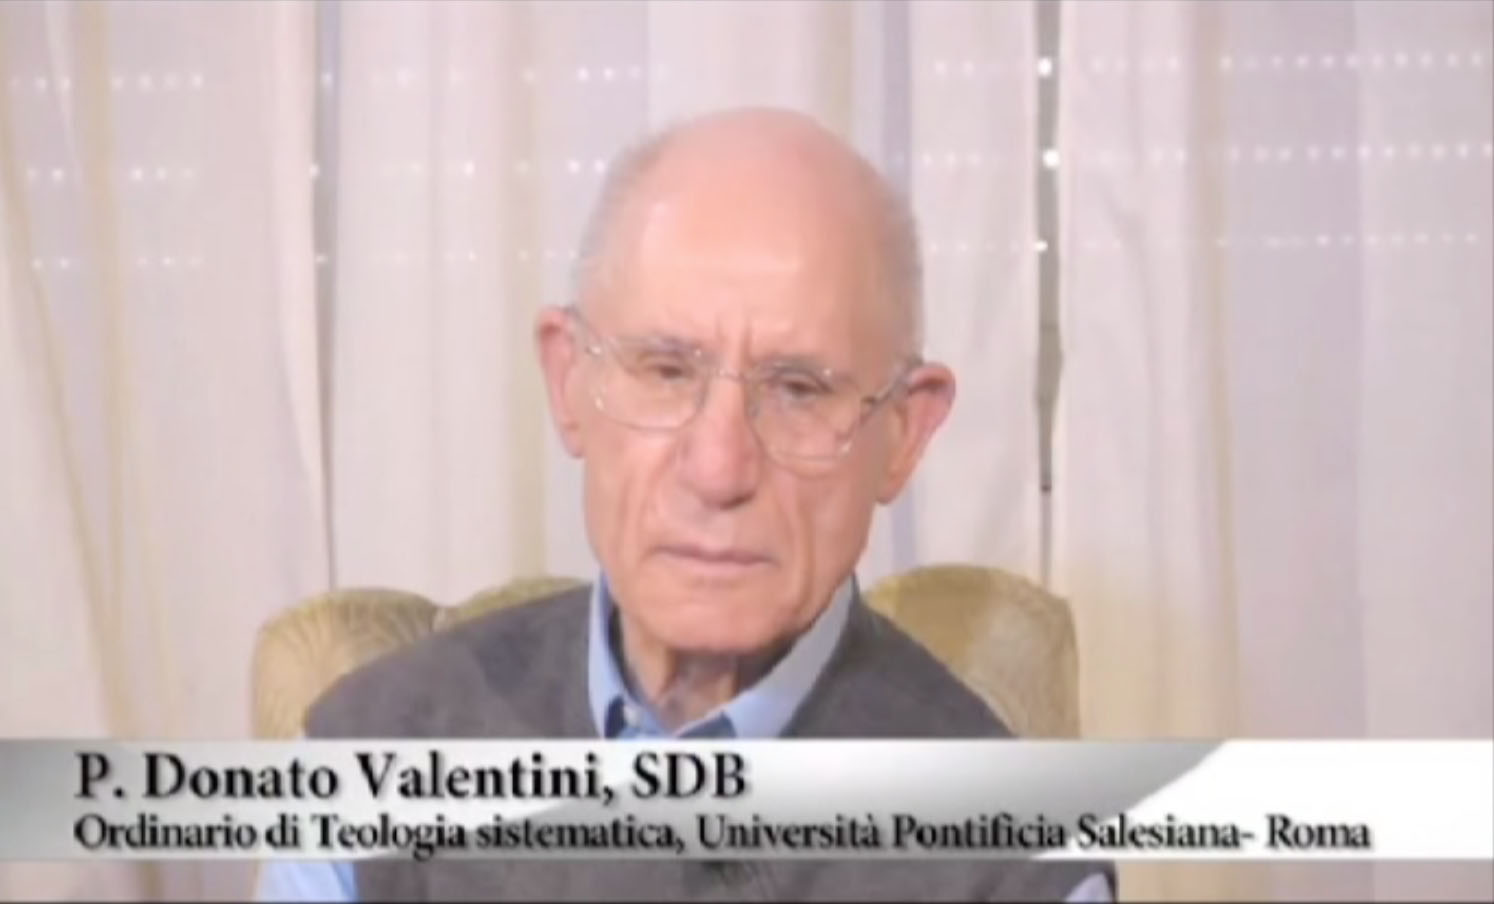 P. Donato Valentini SDB - Ordinario di Teologia sistematica, Università Pontificia Salesiana di Roma - Parte1